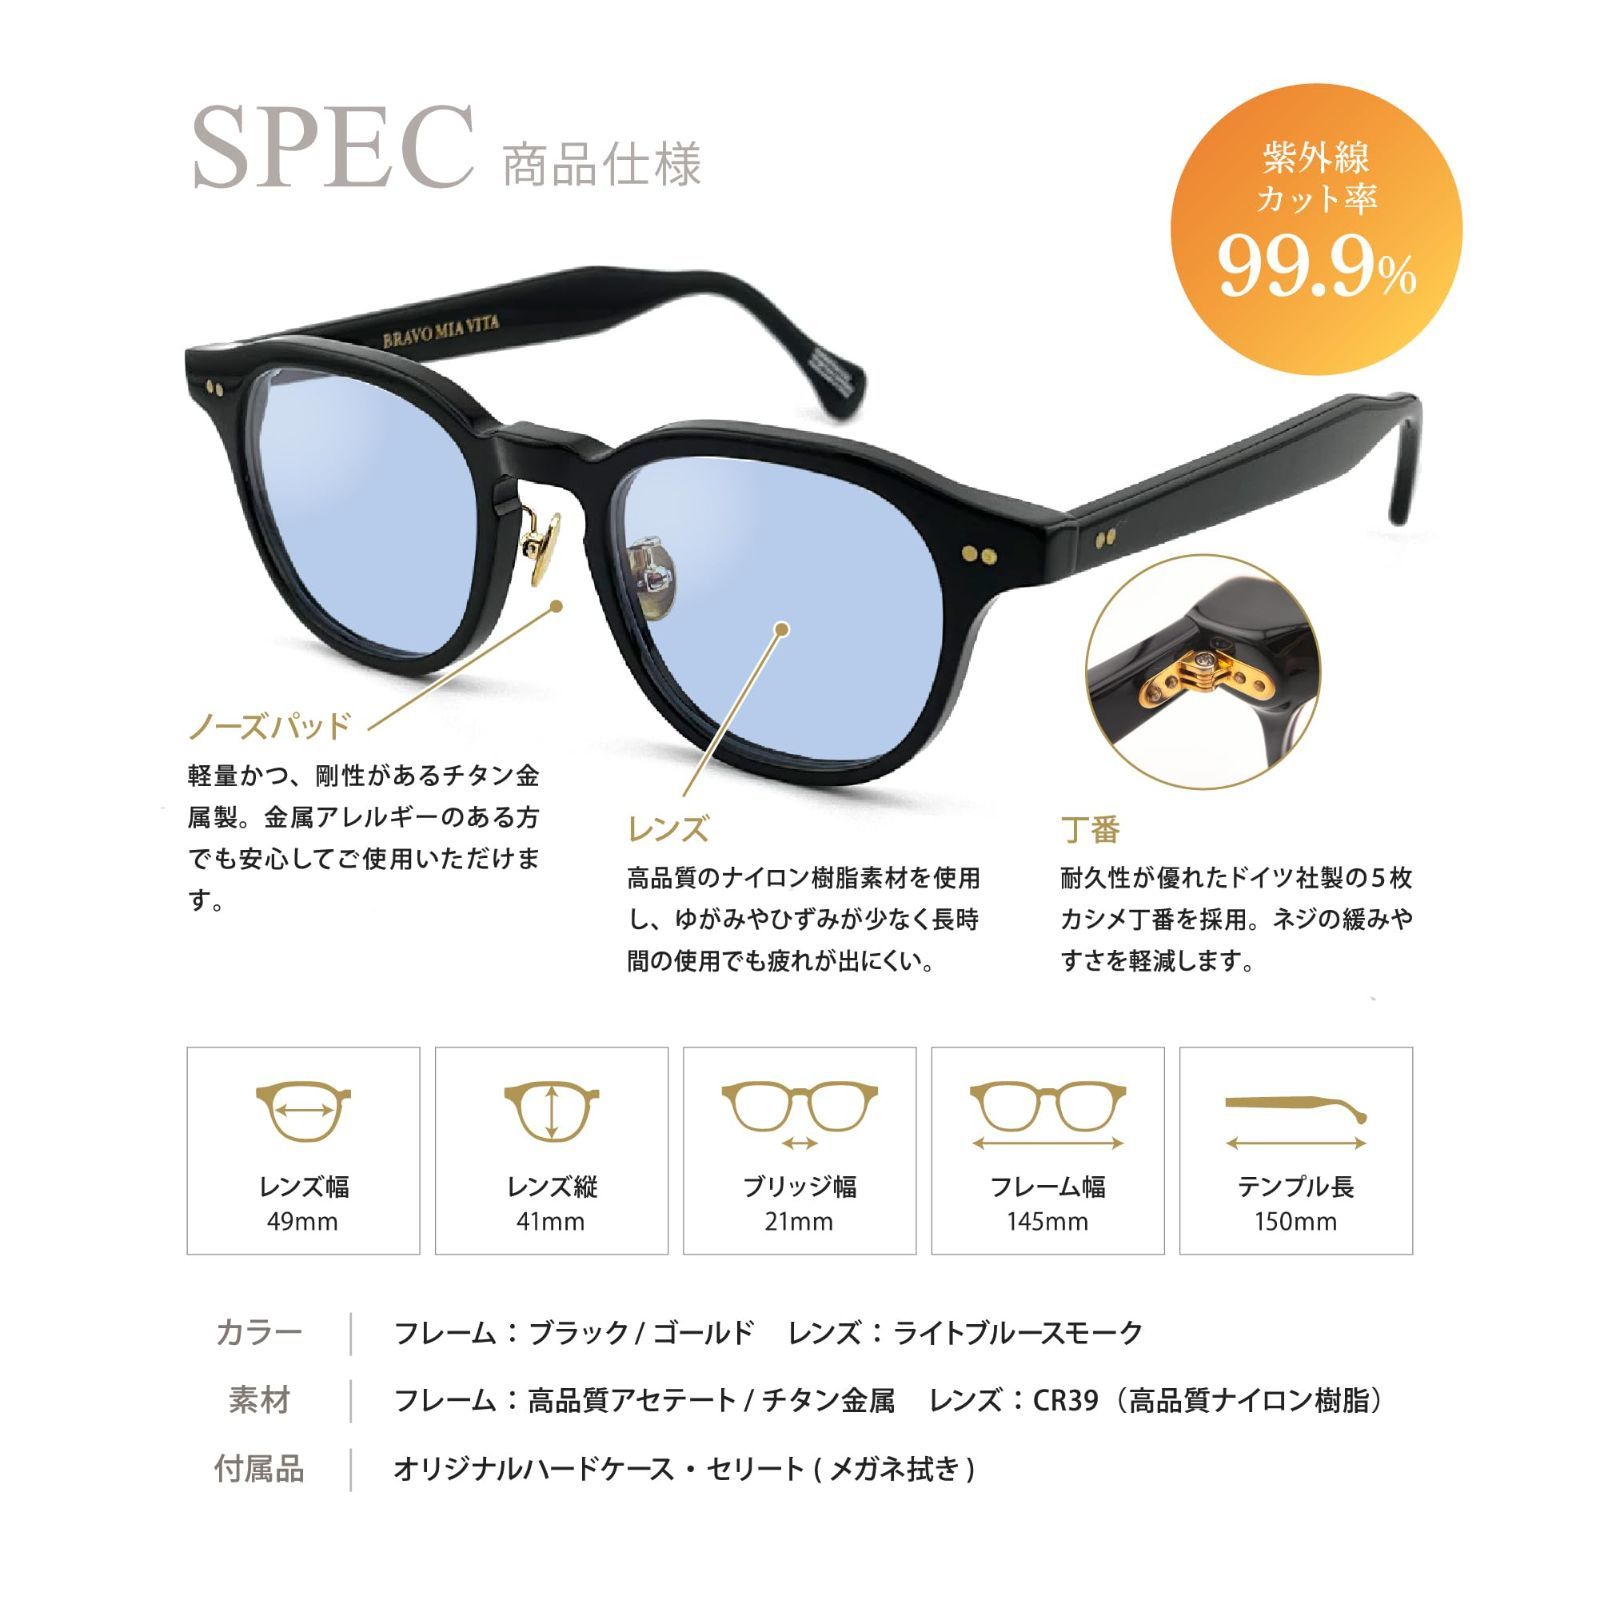 高品質 メガネフレーム ブルーライトカット サングラス 眼鏡 めがね PC